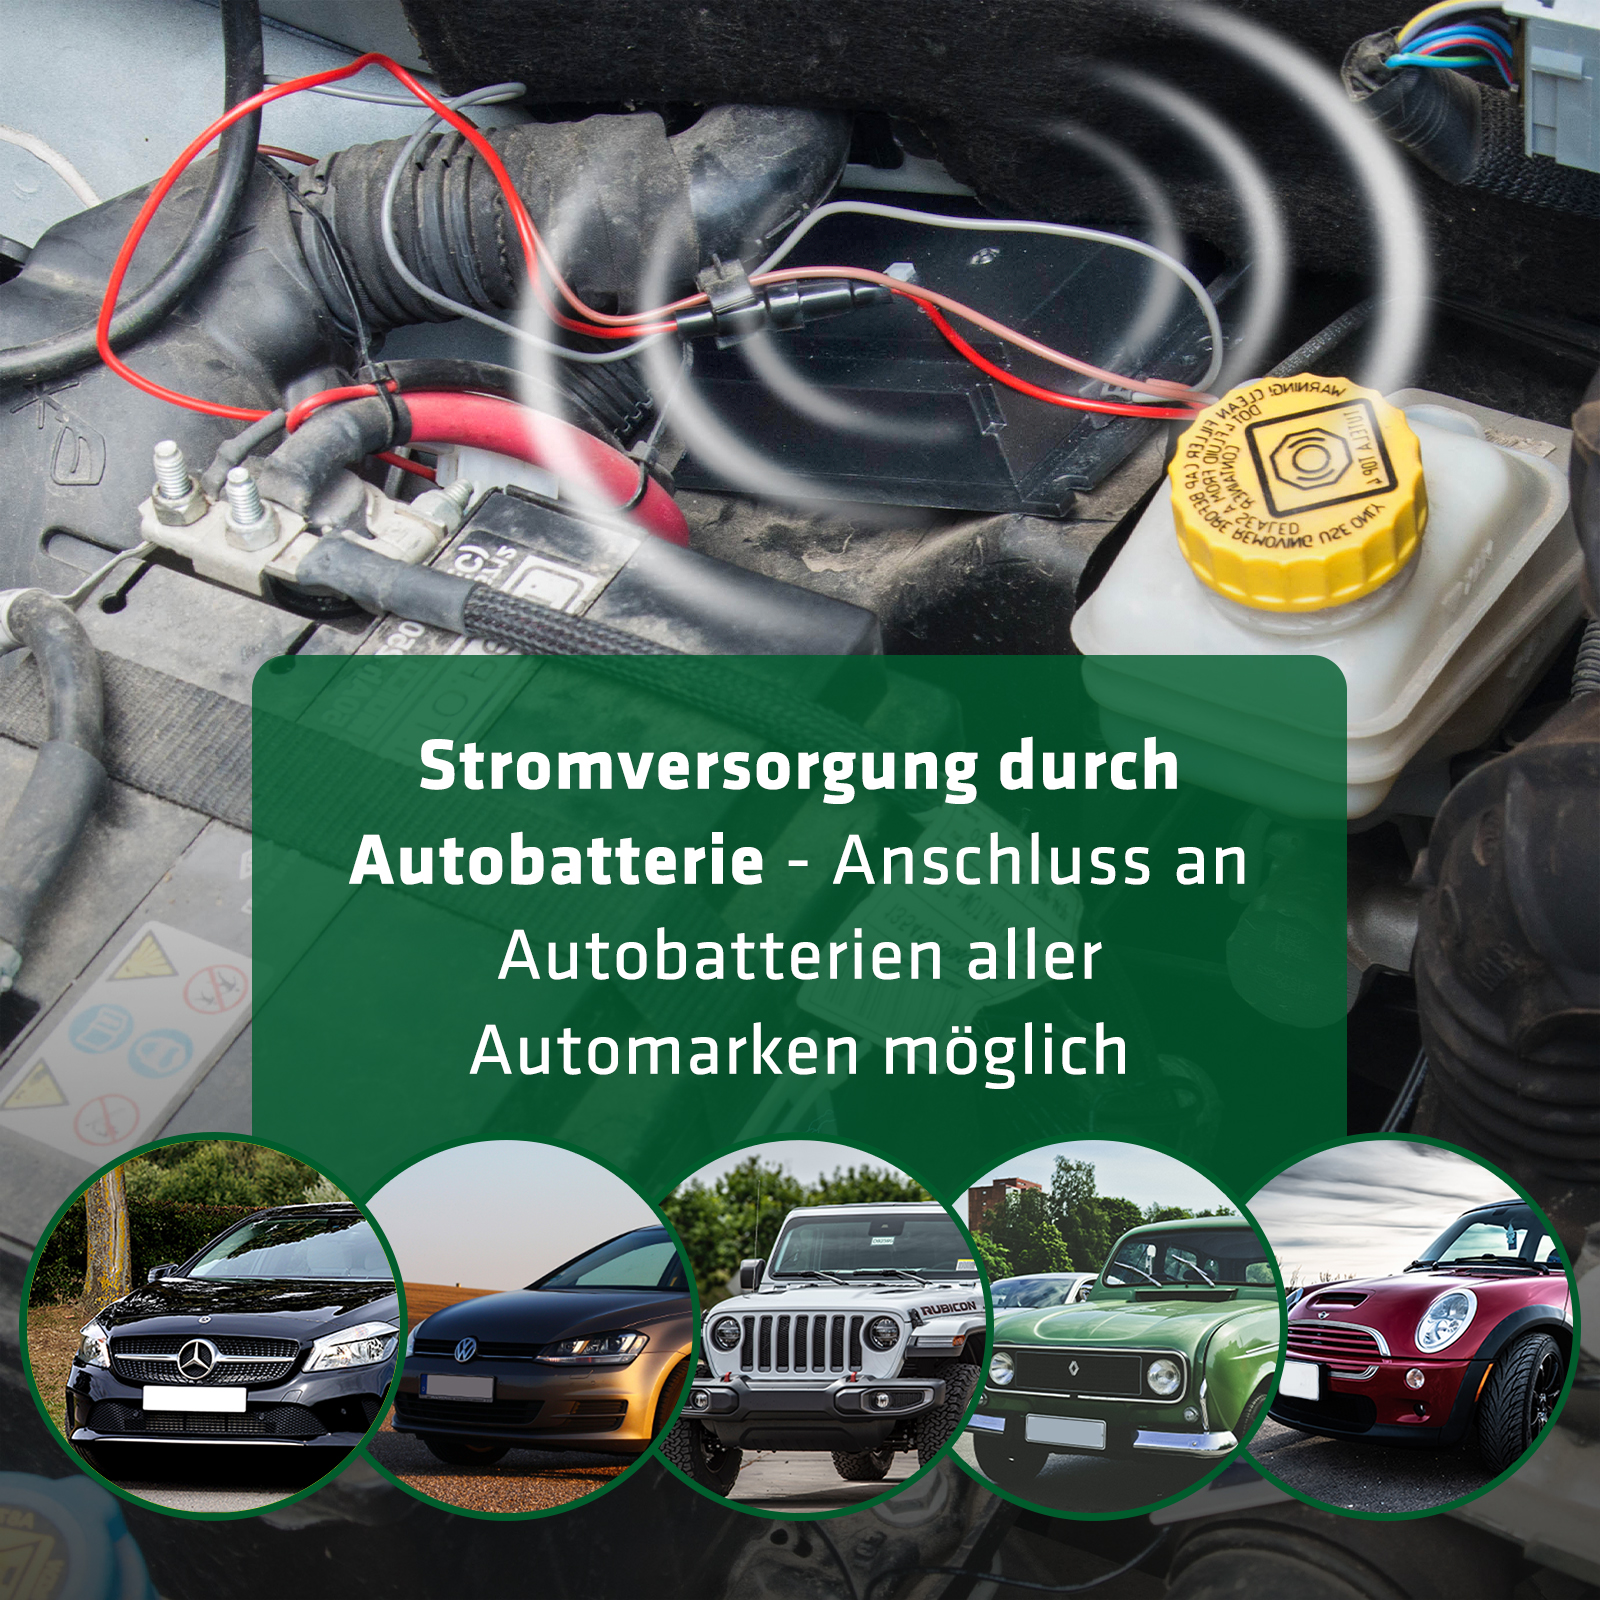 Marderschreck Auto Marderschutz Marderabwehr – GOMAGO - Marderschutz